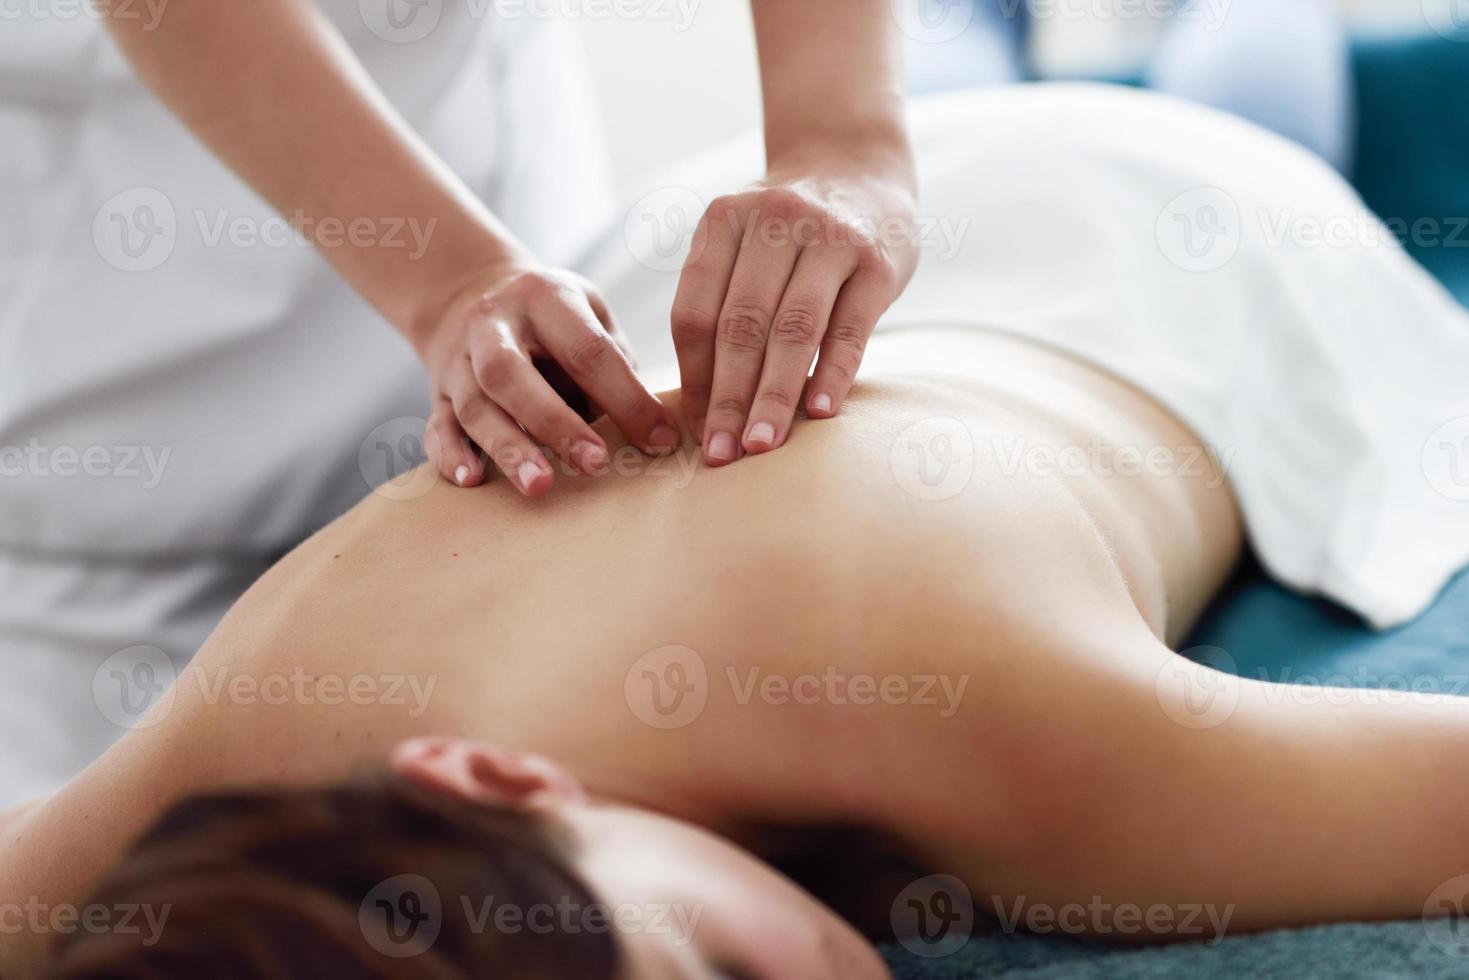 jovem recebendo uma massagem nas costas por um terapeuta profissional. foto